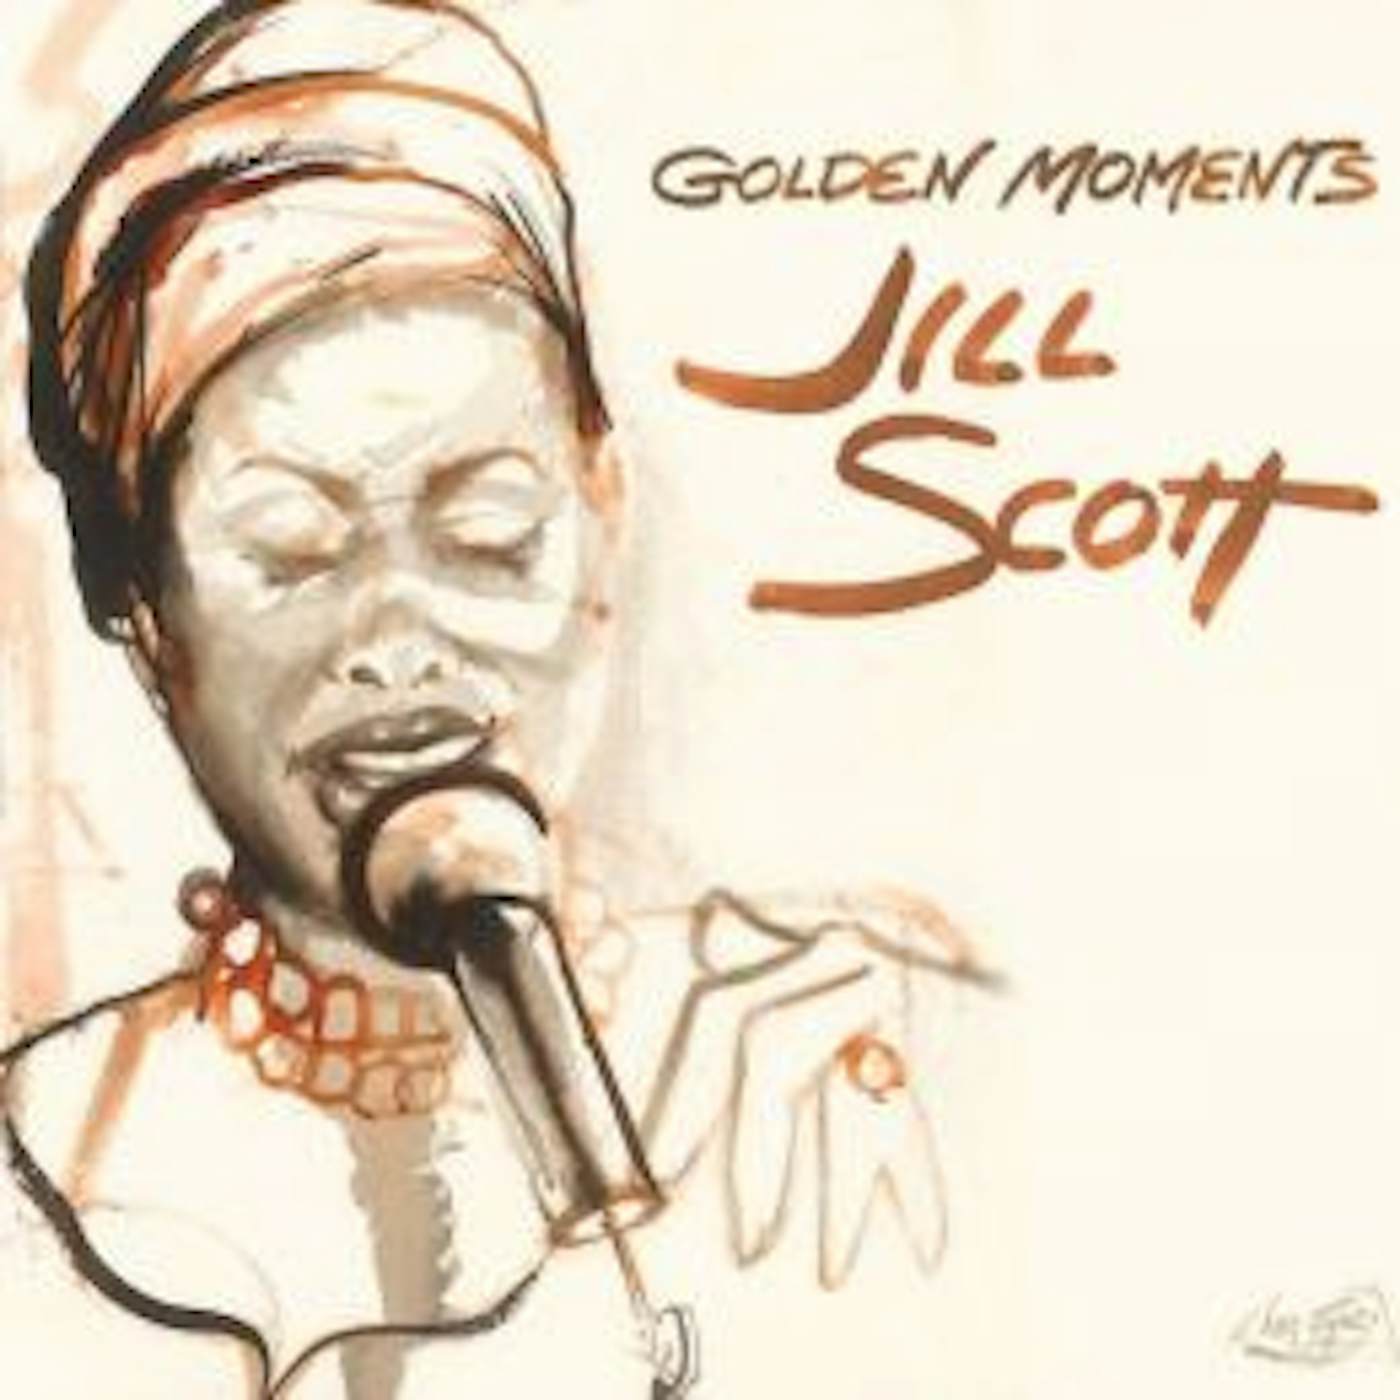 Jill Scott GOLDEN MOMENTS CD